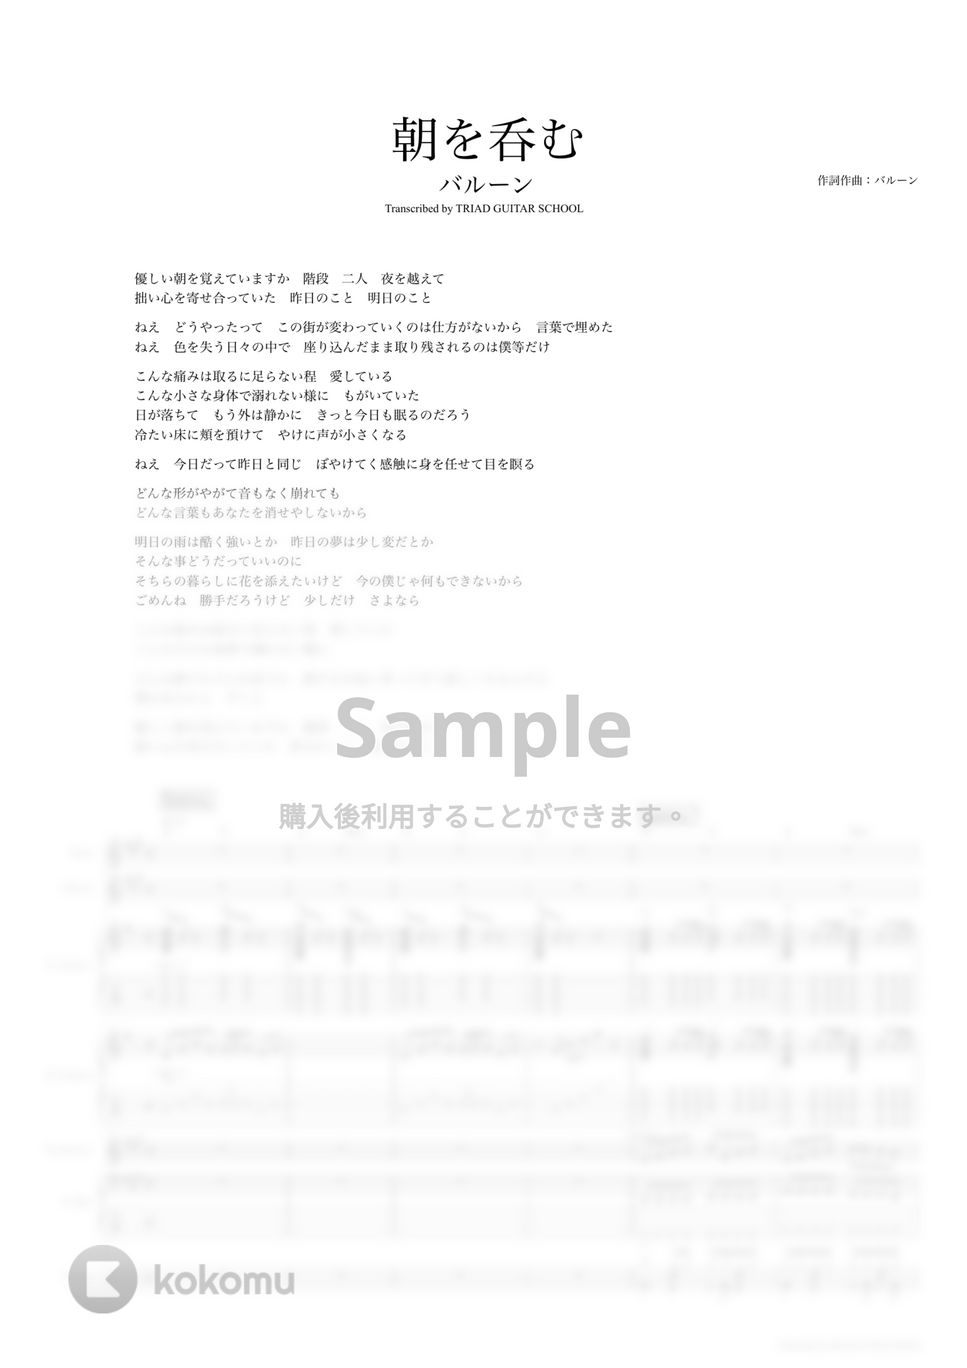 バルーン - 朝を呑む (バンドスコア) by TRIAD GUITAR SCHOOL